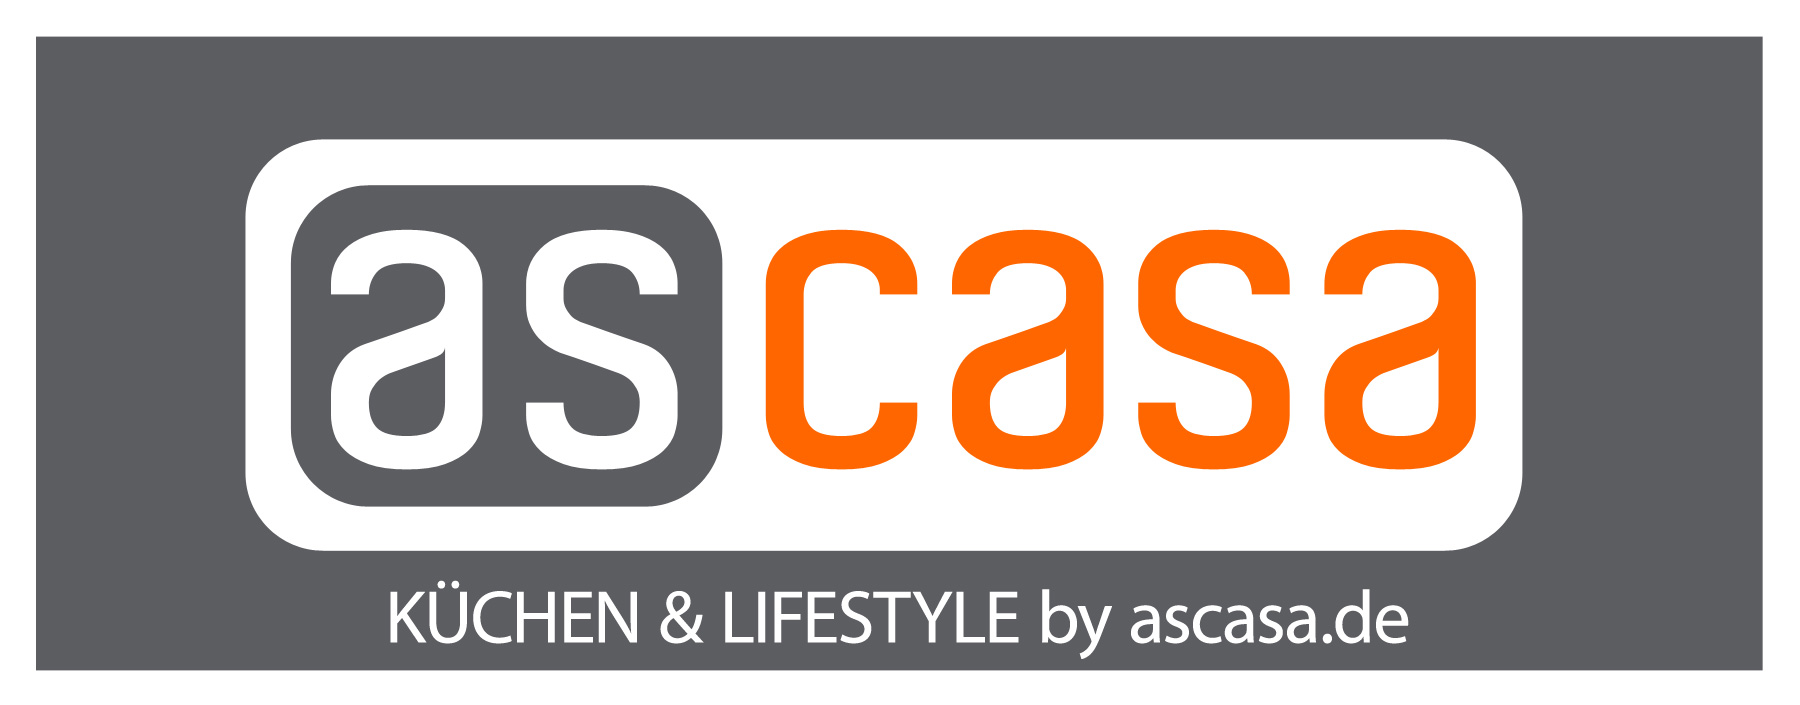 Logo_Ascasa-Kuechen.jpg